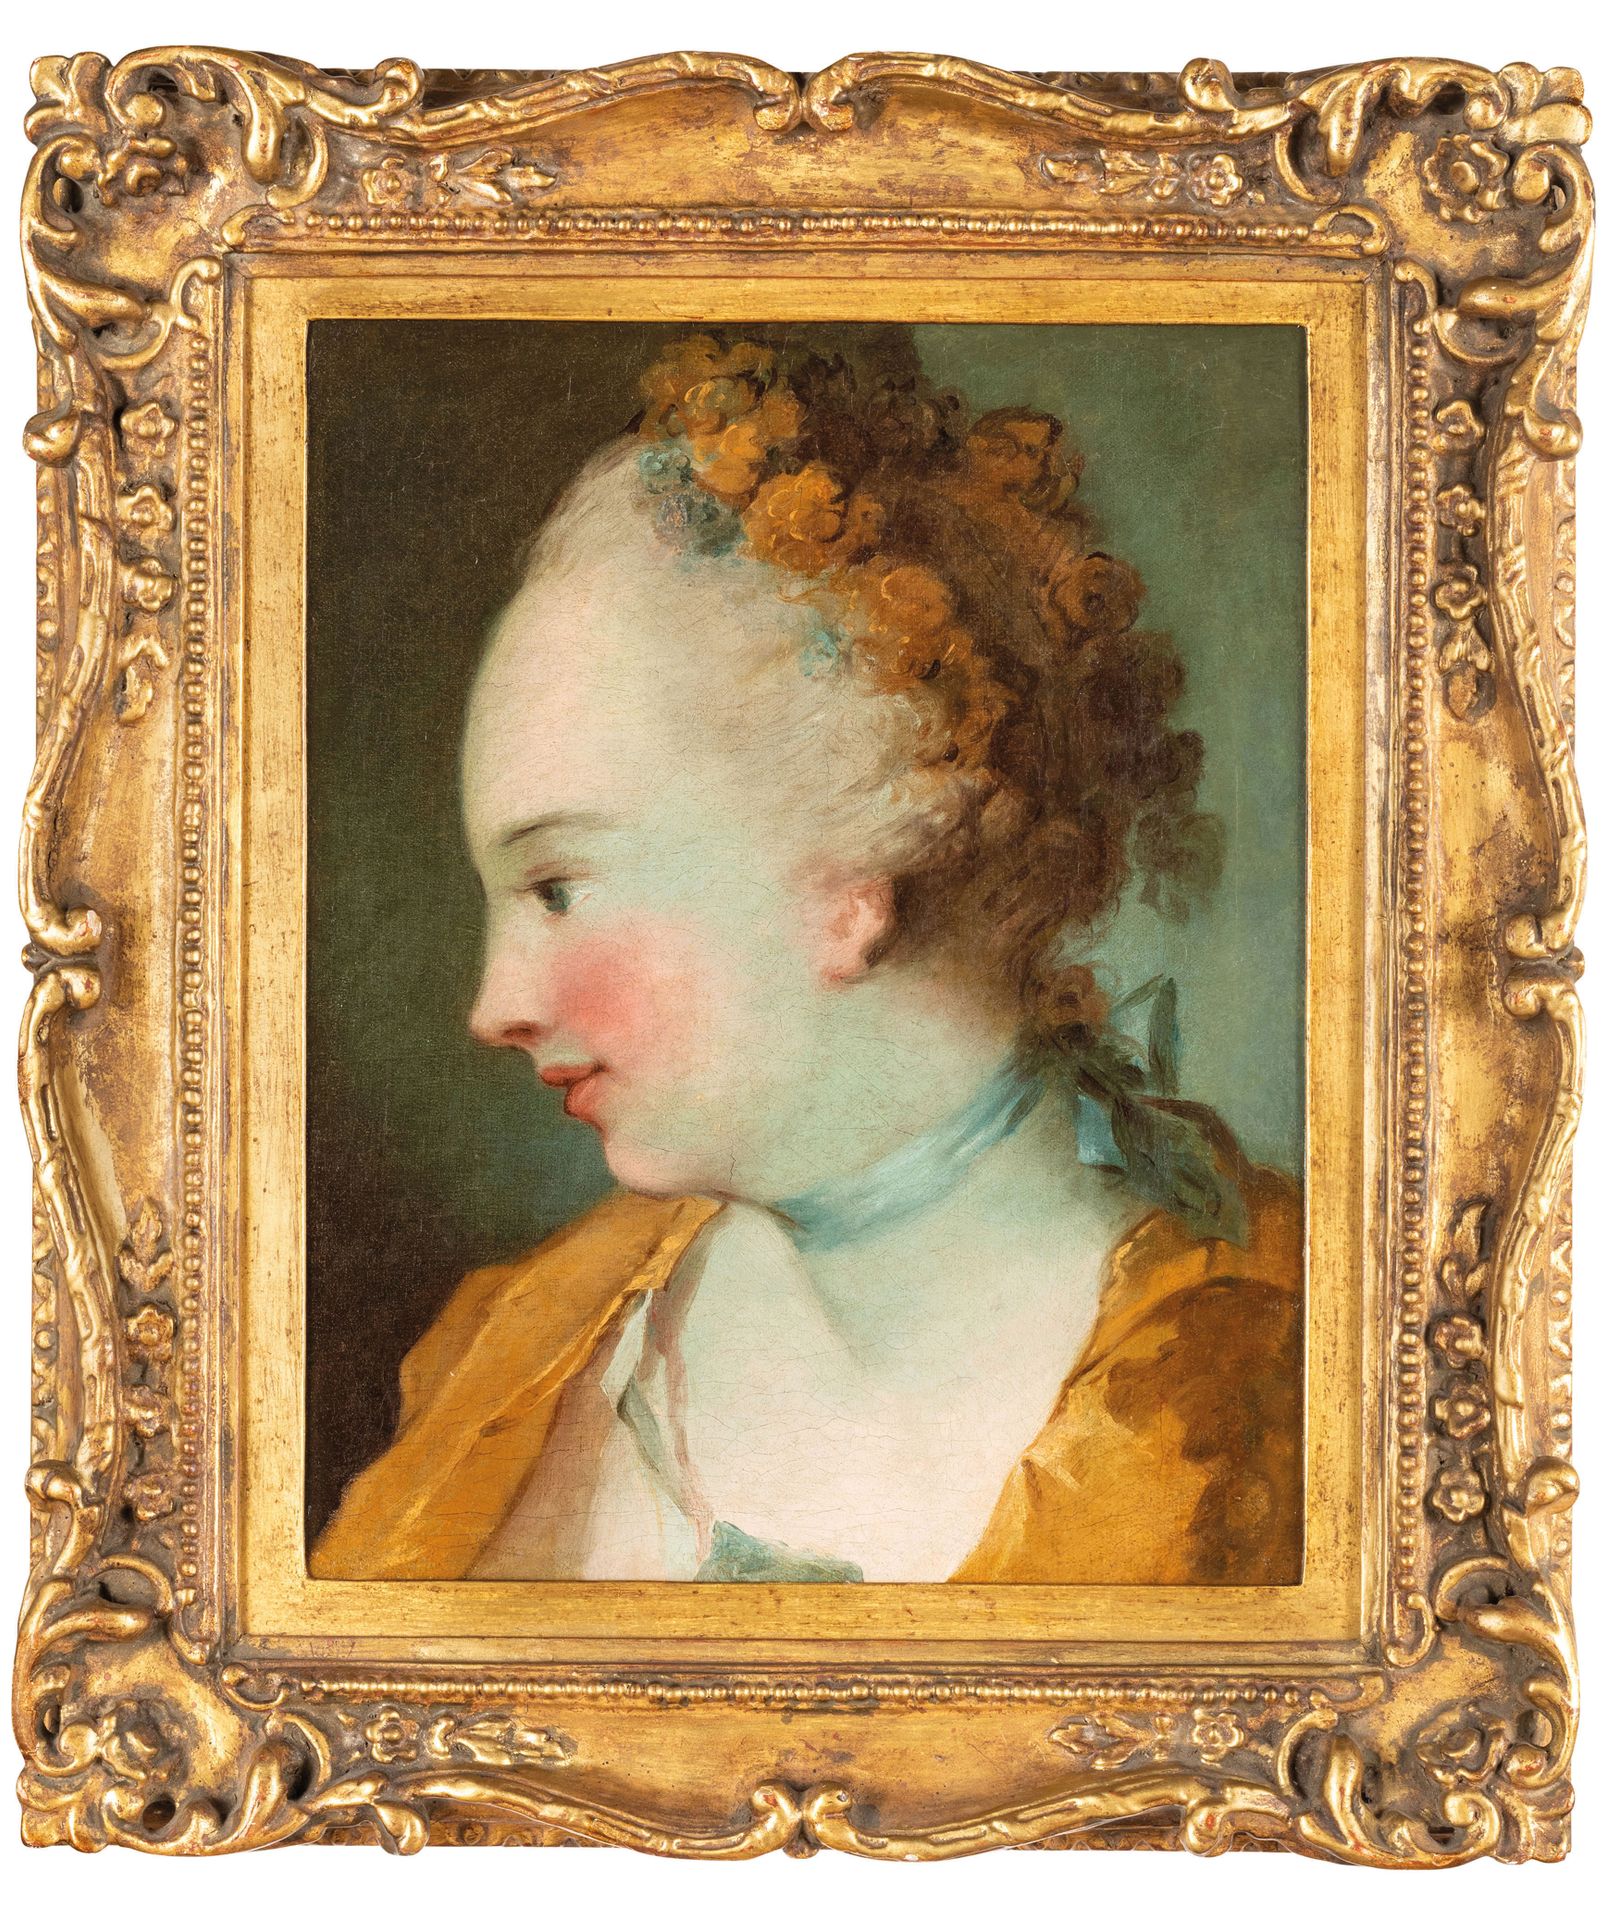 PHILIPPE MERCIER (attr. A) (Berlin, 1689 - London, 1760) 
Portrait of a woman in&hellip;